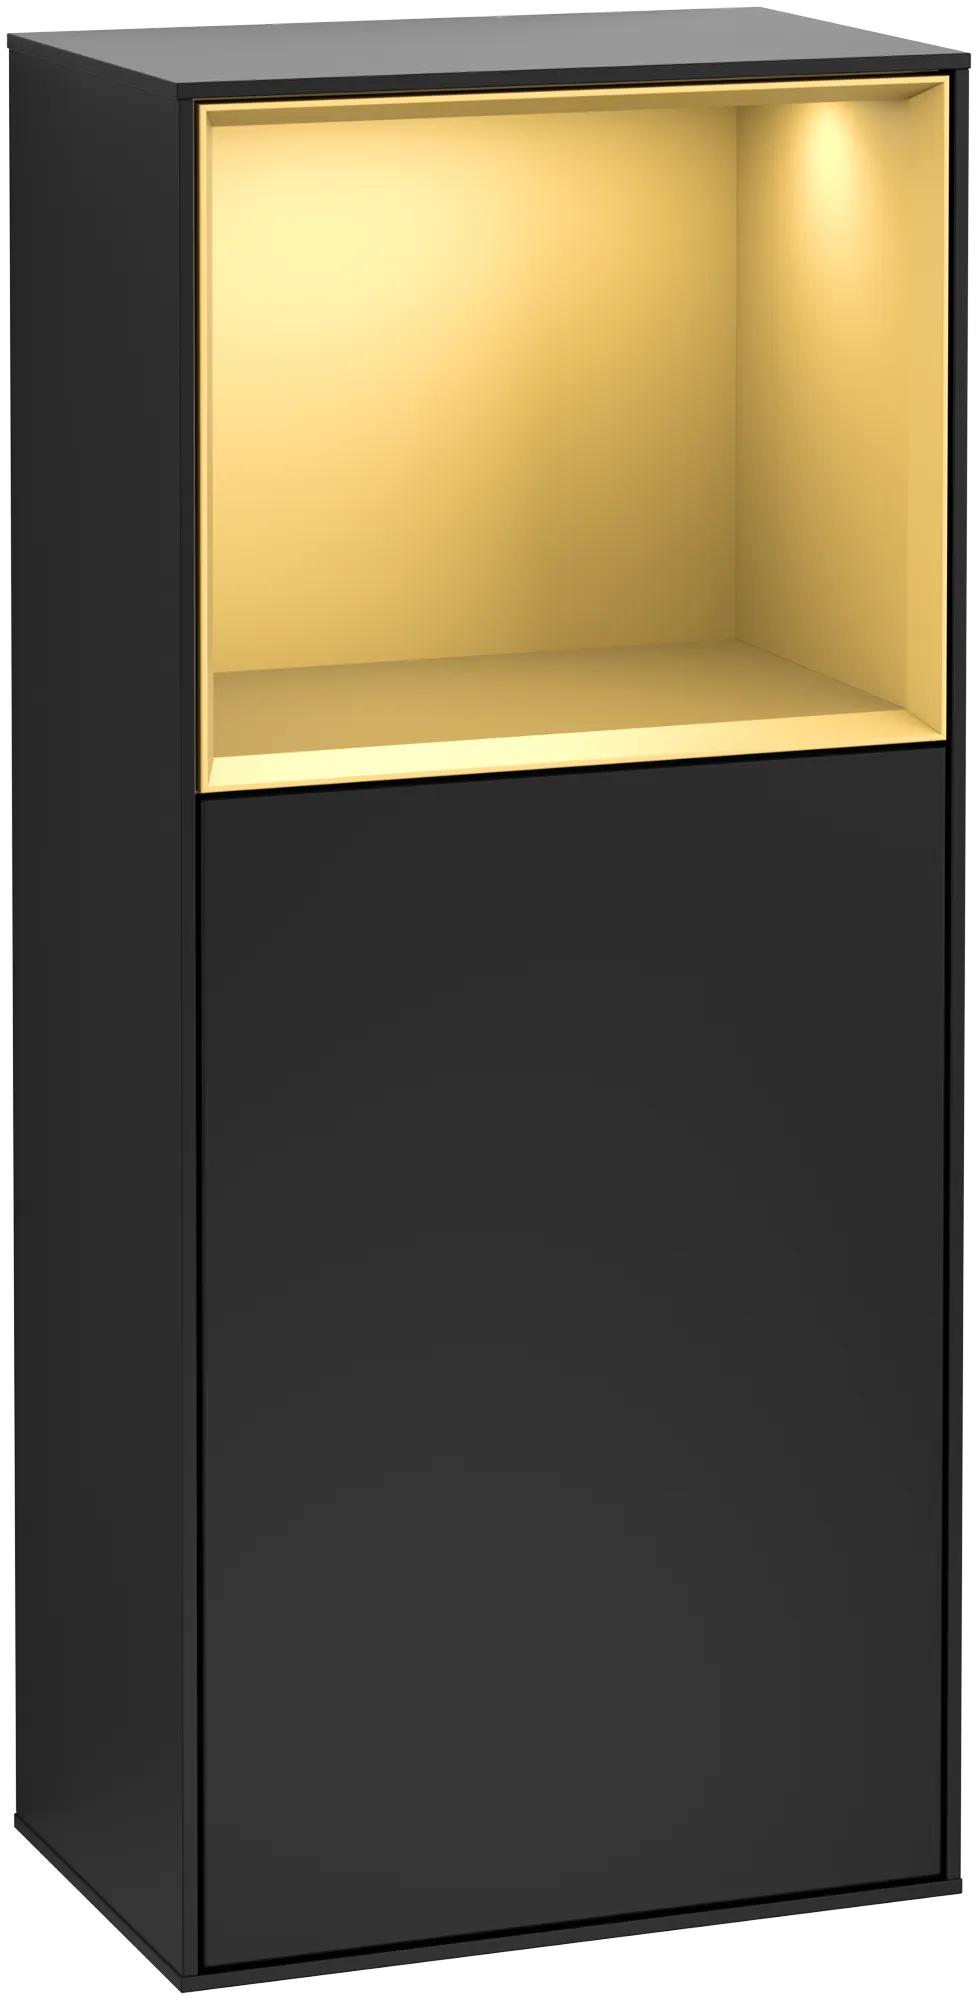 Bild von VILLEROY BOCH Finion Seitenschrank, mit Beleuchtung, 1 Tür, 418 x 936 x 270 mm, Black Matt Lacquer / Gold Matt Lacquer #G510HFPD